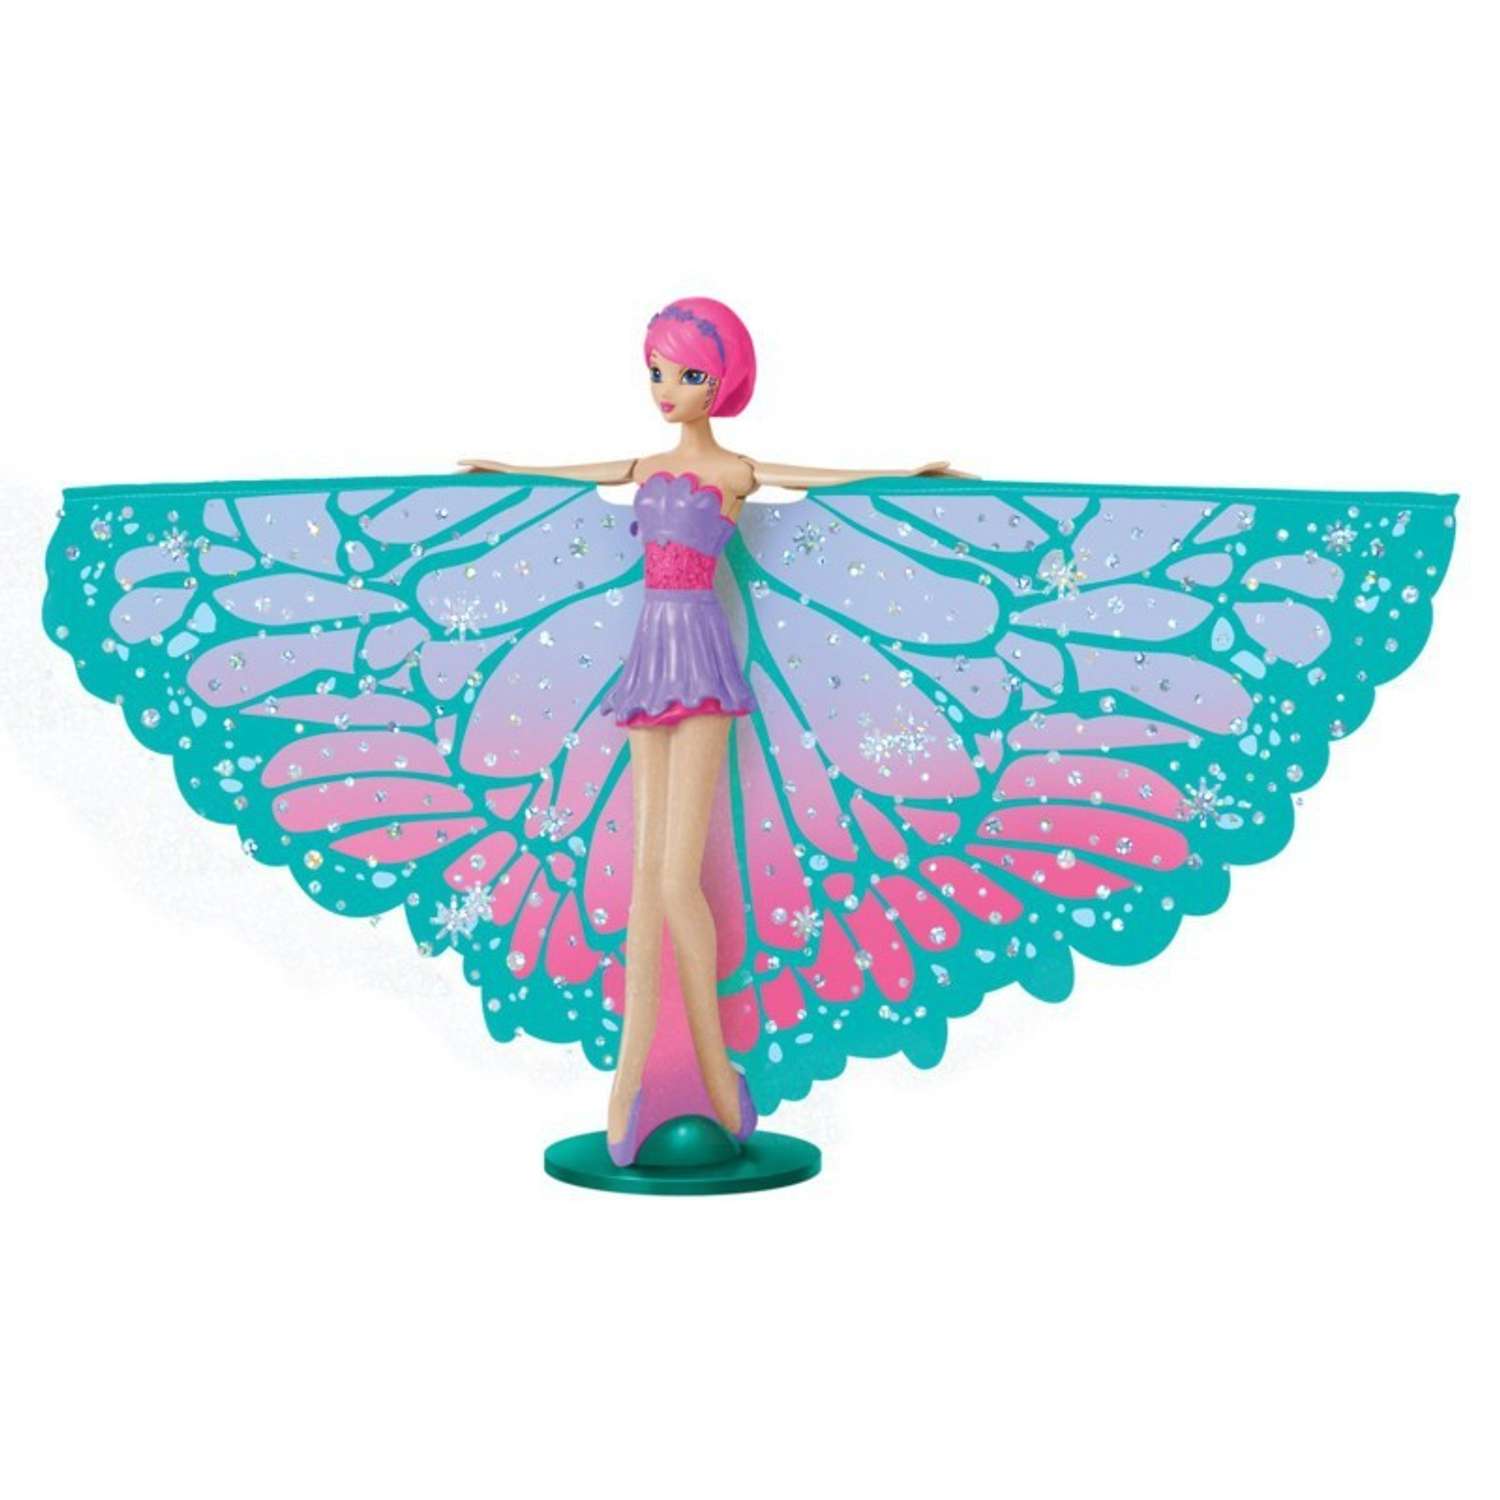 Сказочная фея Flying Fairy летит при запуске рукой в ассортименте 35817 - фото 1